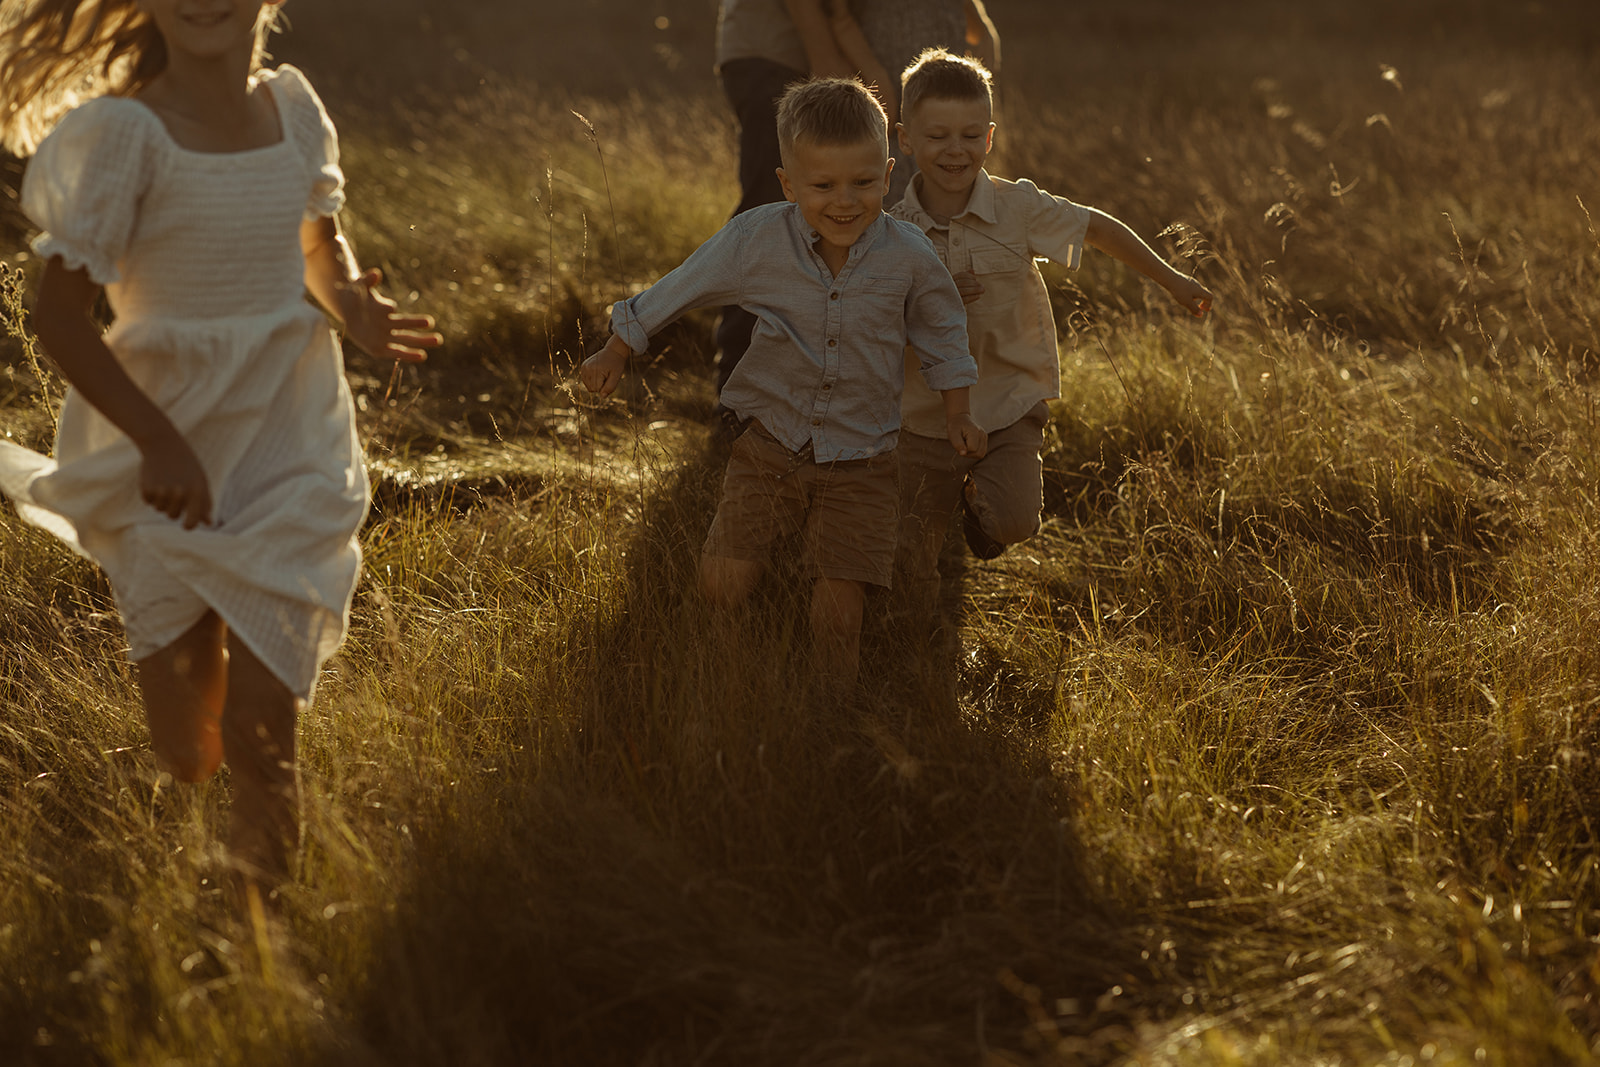 Children running through a field at sunset